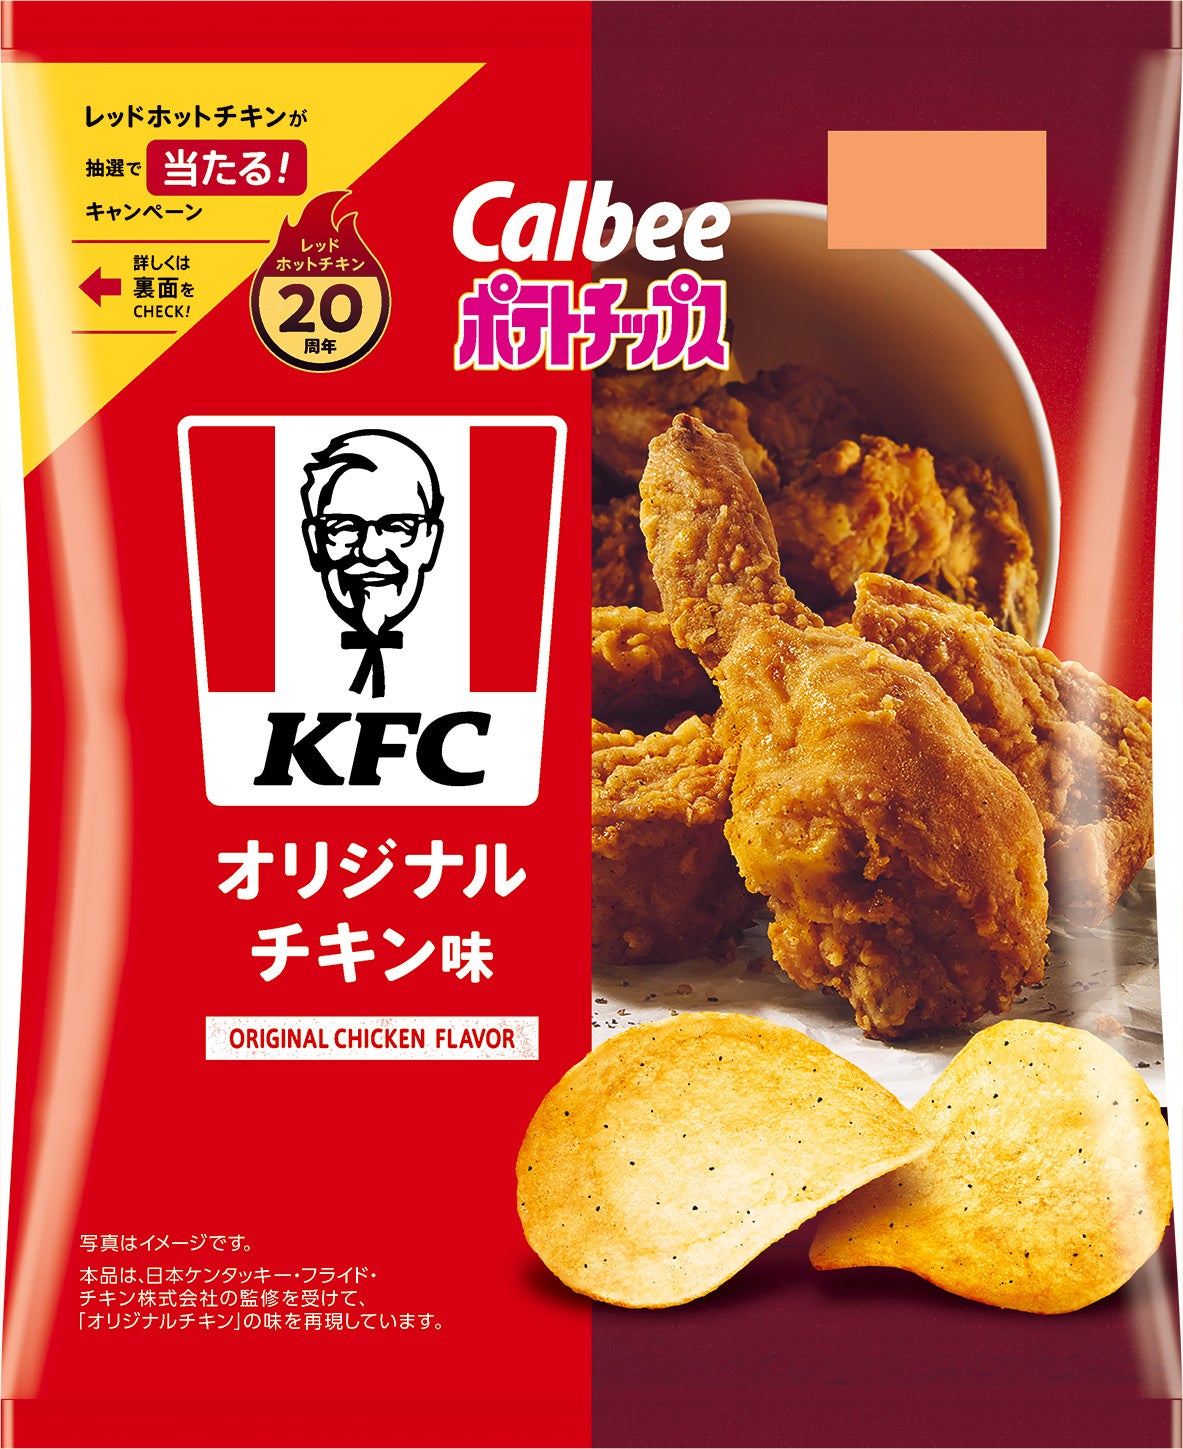 カルビー×KFC、約9年ぶりに夢のコラボレーションが復活！20周年を迎えるあの人気商品の味わいも再現『ポテト...